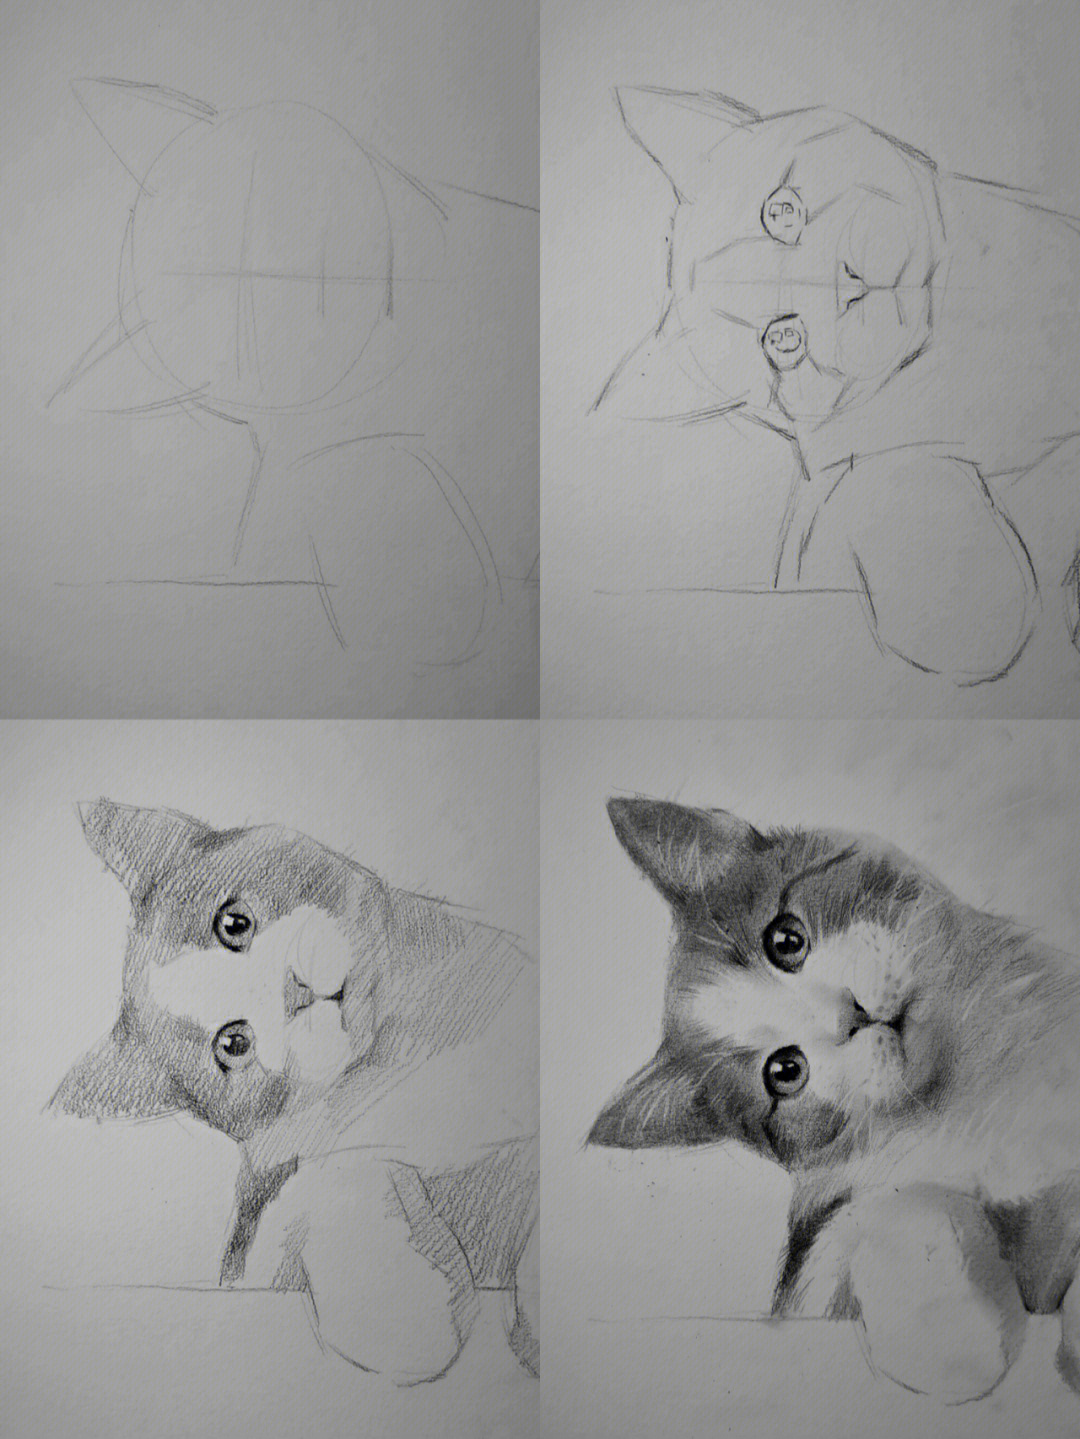 画小猫咪画法图片